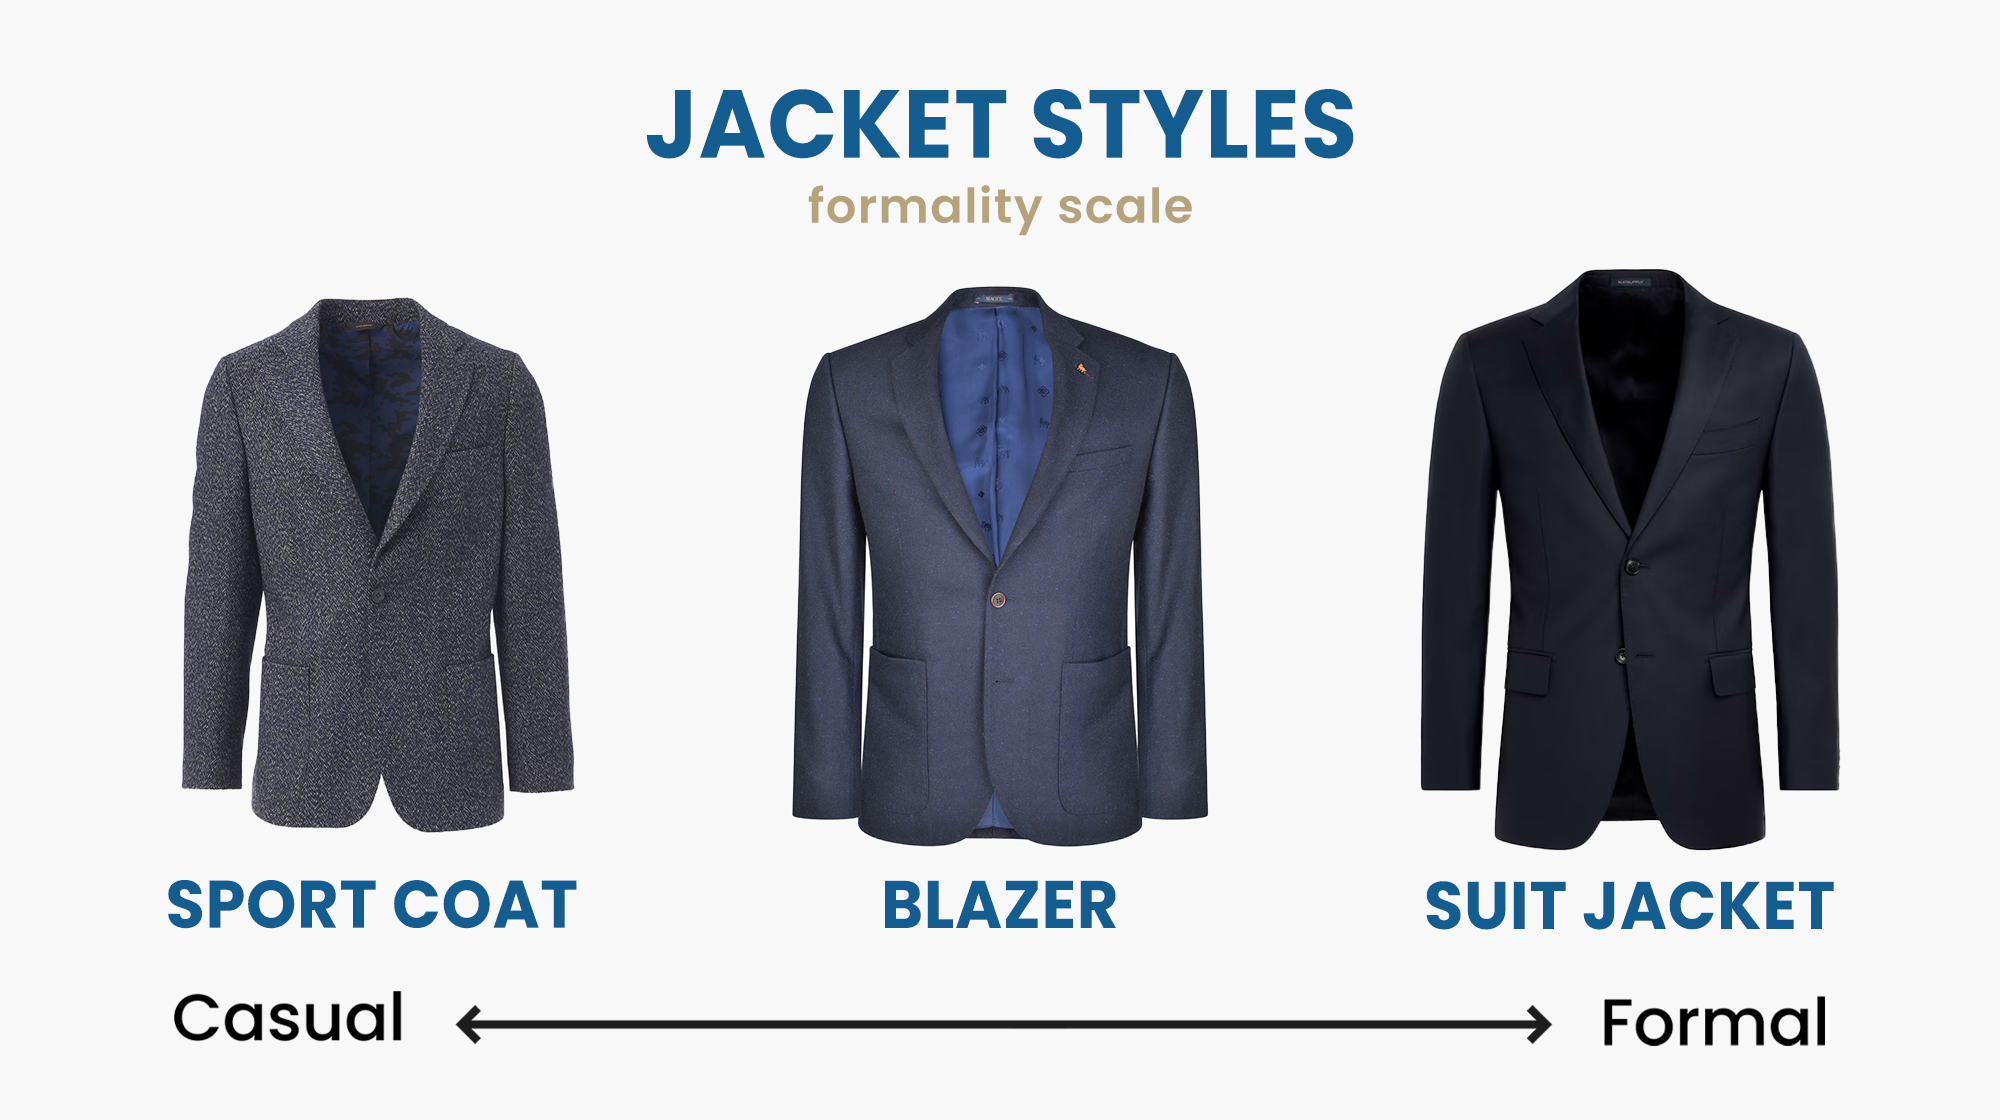 sport coat vs. blazer vs. suit jacket: main differences